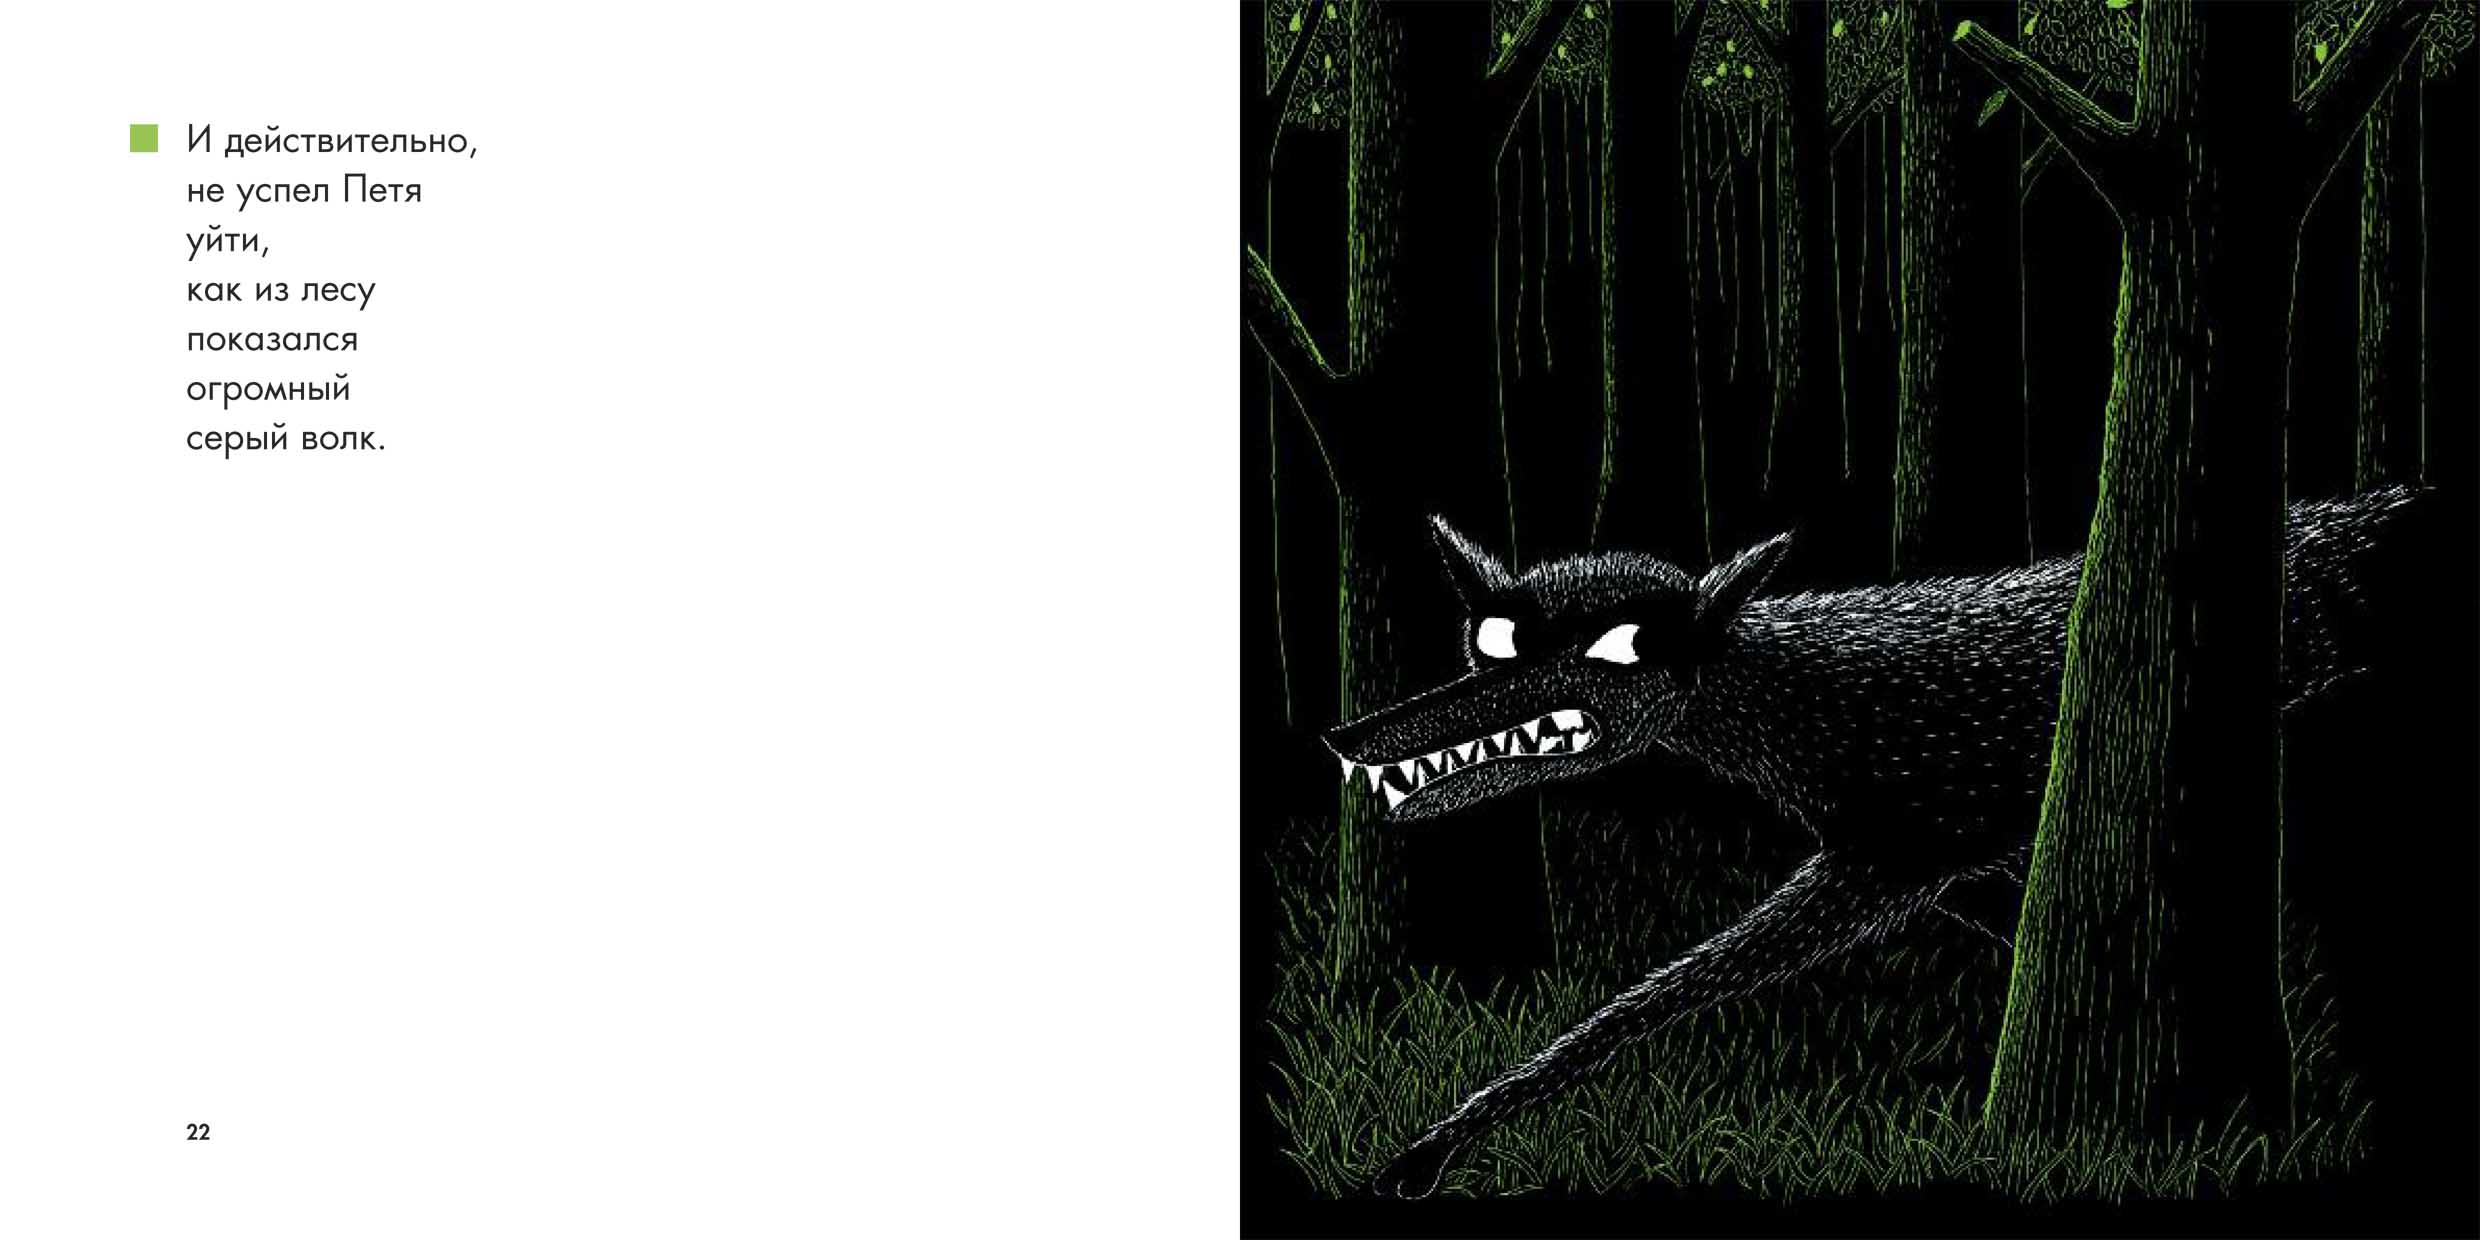 Иллюстрации к мультфильму Петя и волк